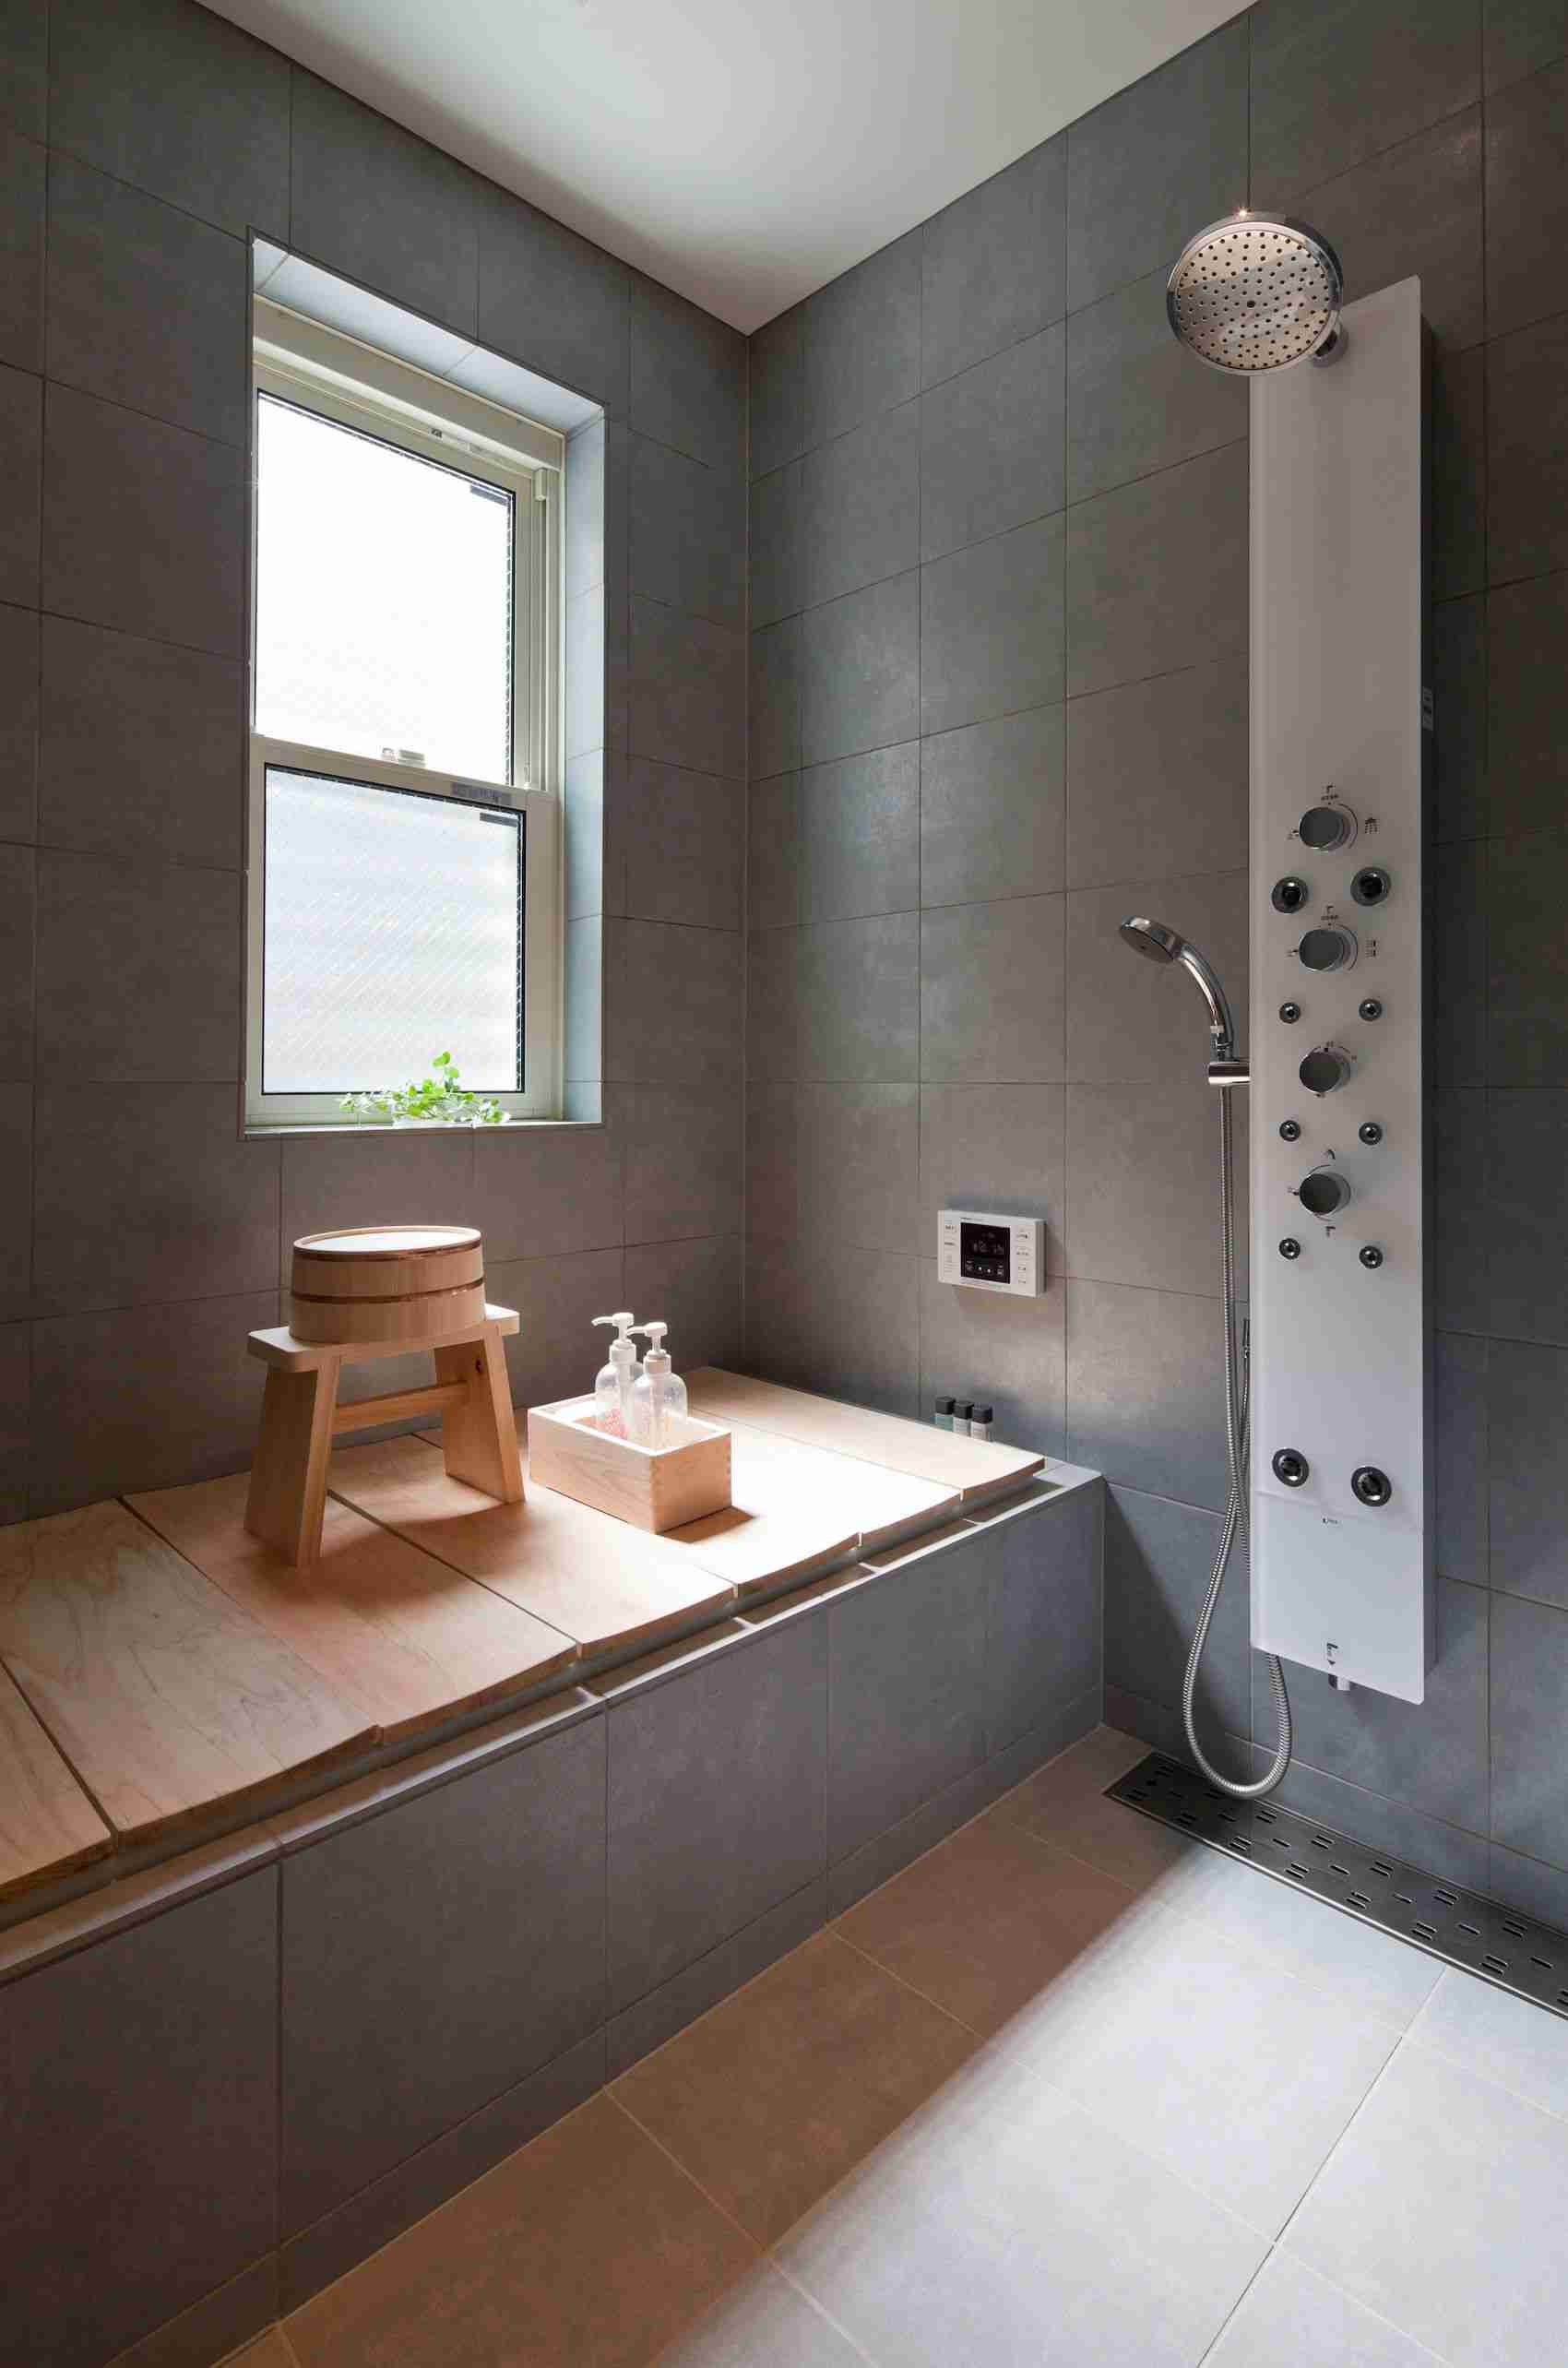 Badezimmer in Grau Holzboden Japanischer Stil Zen Look Modern Wohntrends